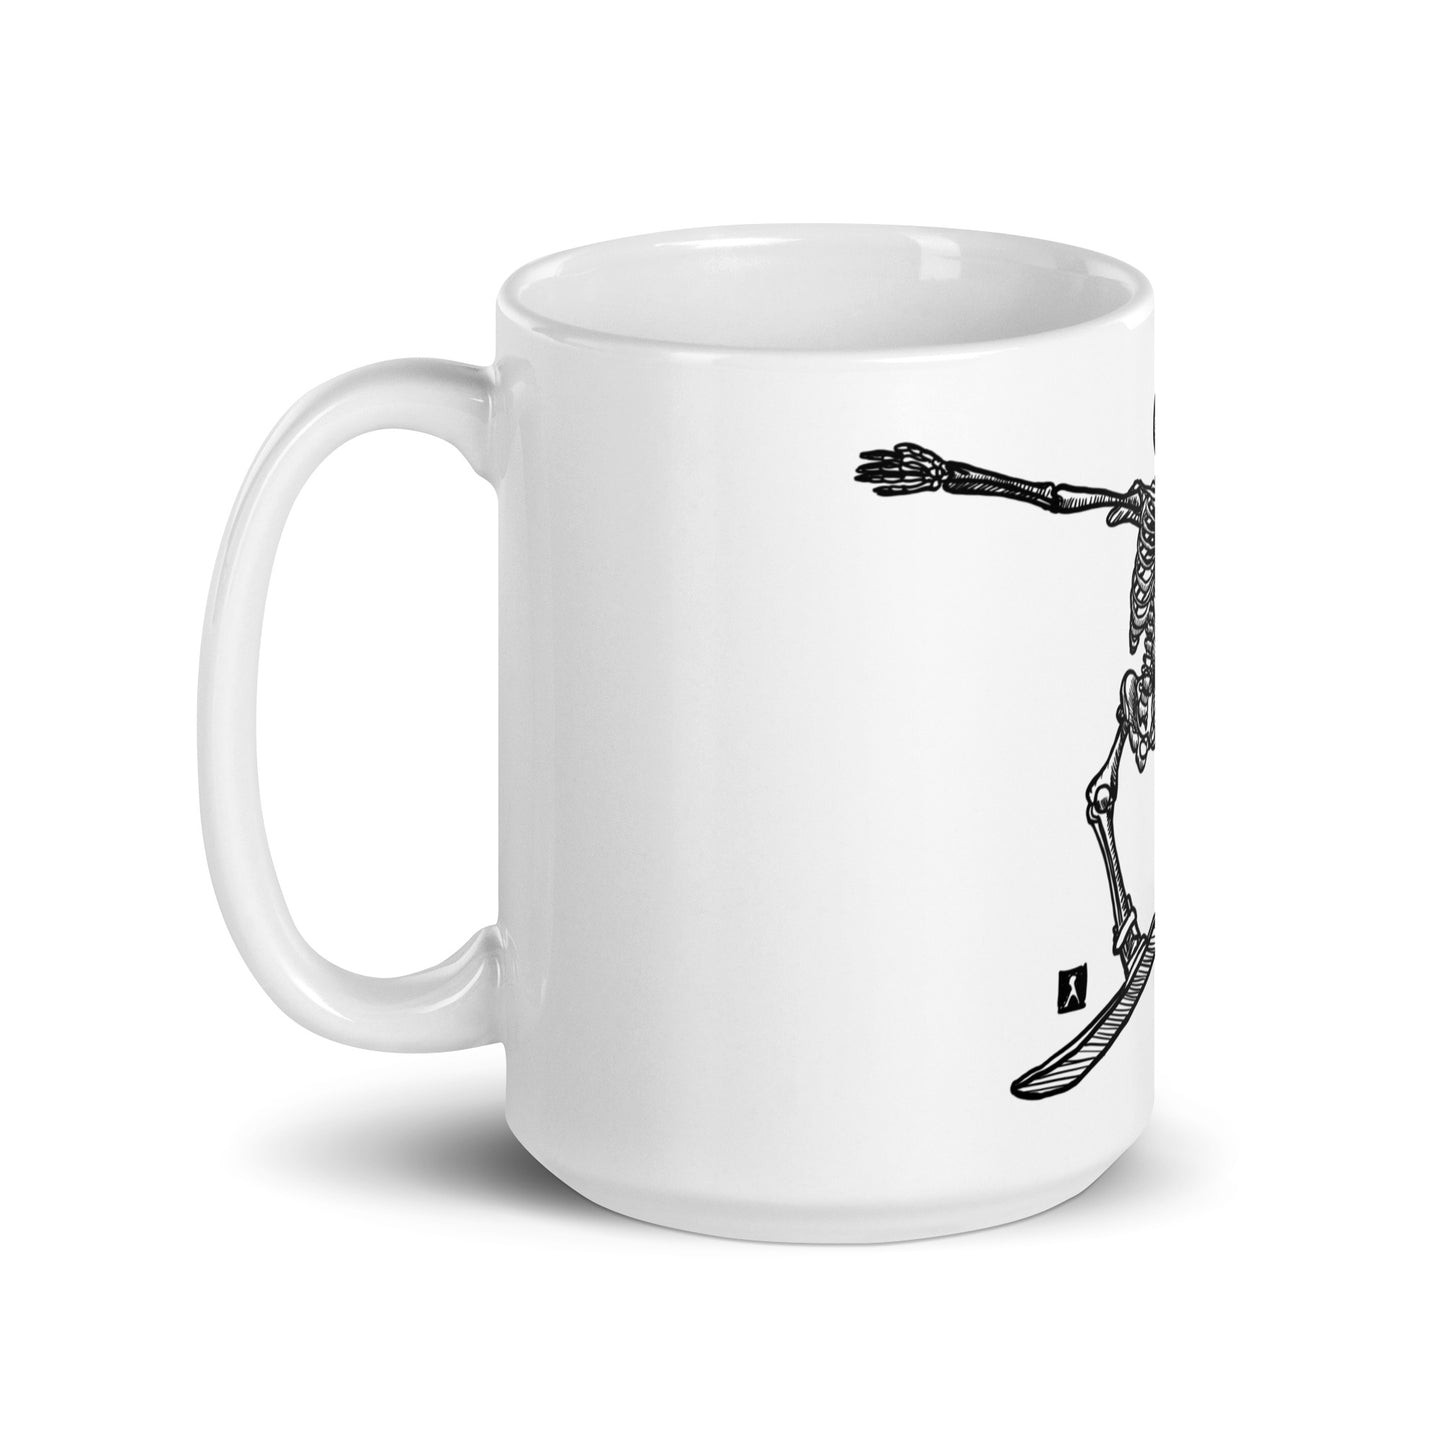 BellavanceInk: Coffee Mug With Pen & Ink Drawing Of Skeleton Snowboarding